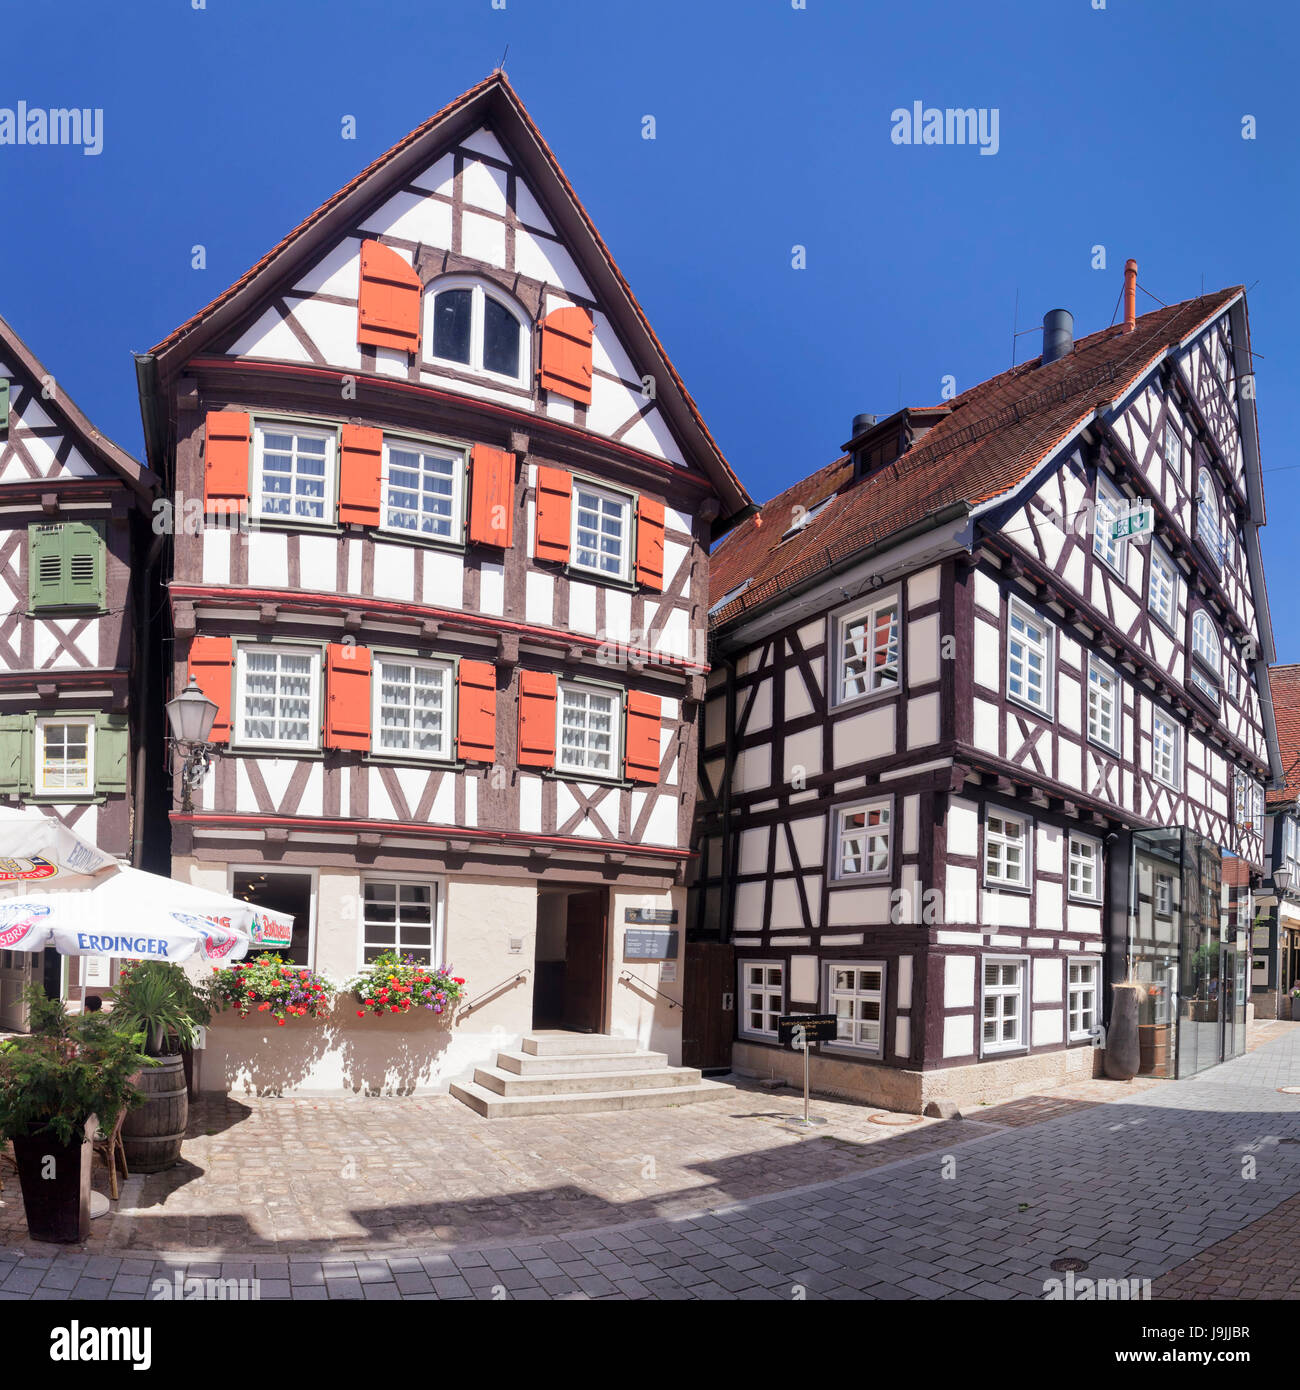 Naissance Gottlieb Daimler, maisons à colombages, Schorndorf (village), de montagnes boisées (Schurwald), Bade-Wurtemberg, Allemagne Banque D'Images